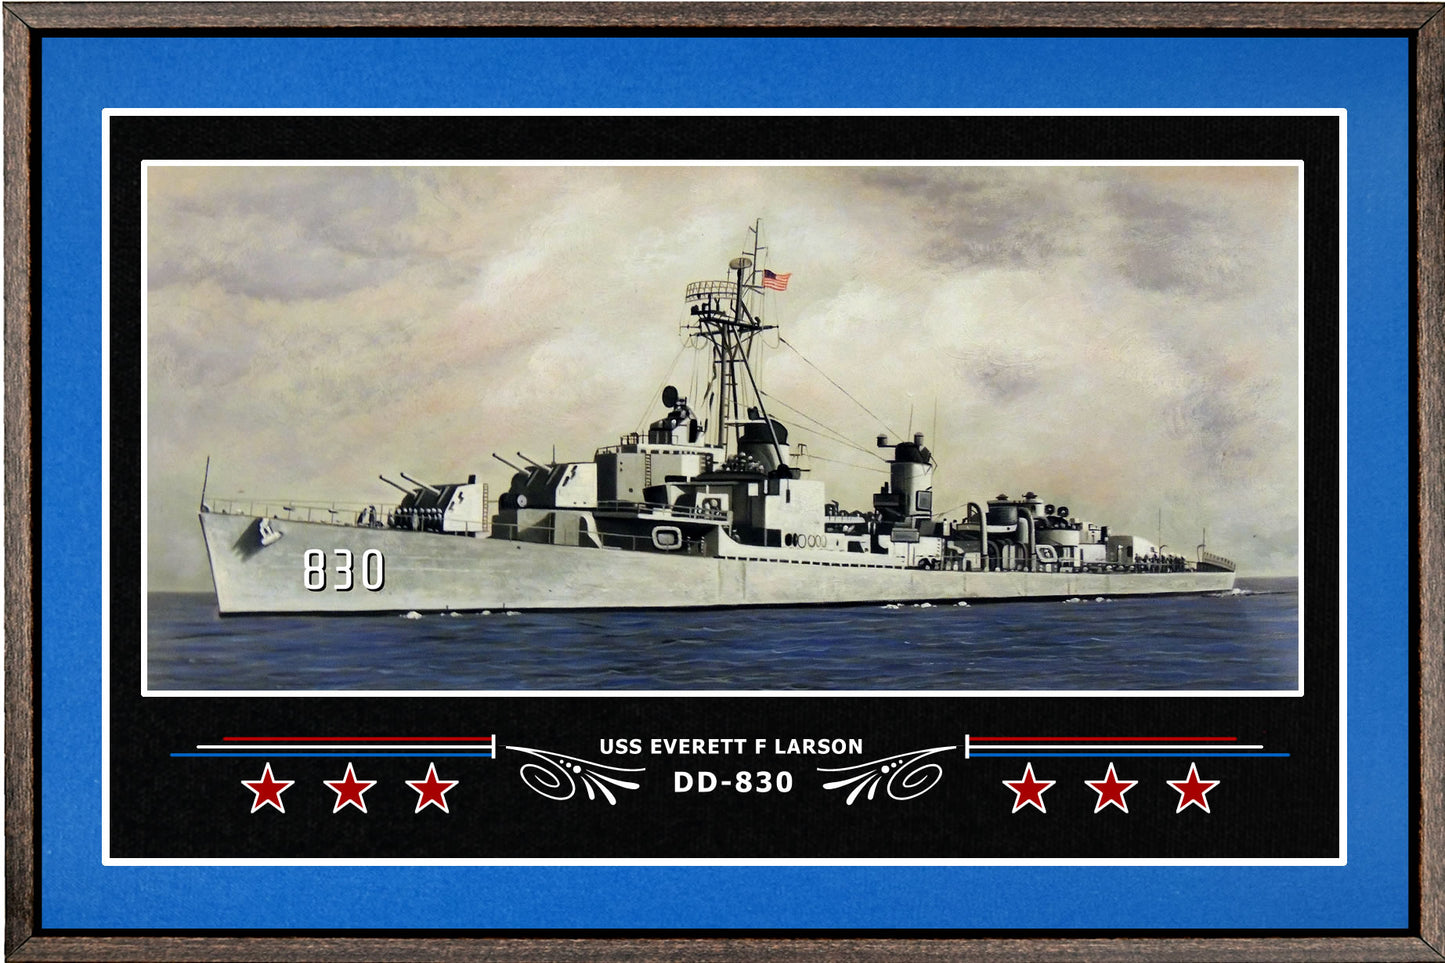 USS EVERETT F LARSON DD 830 BOX FRAMED CANVAS ART BLUE